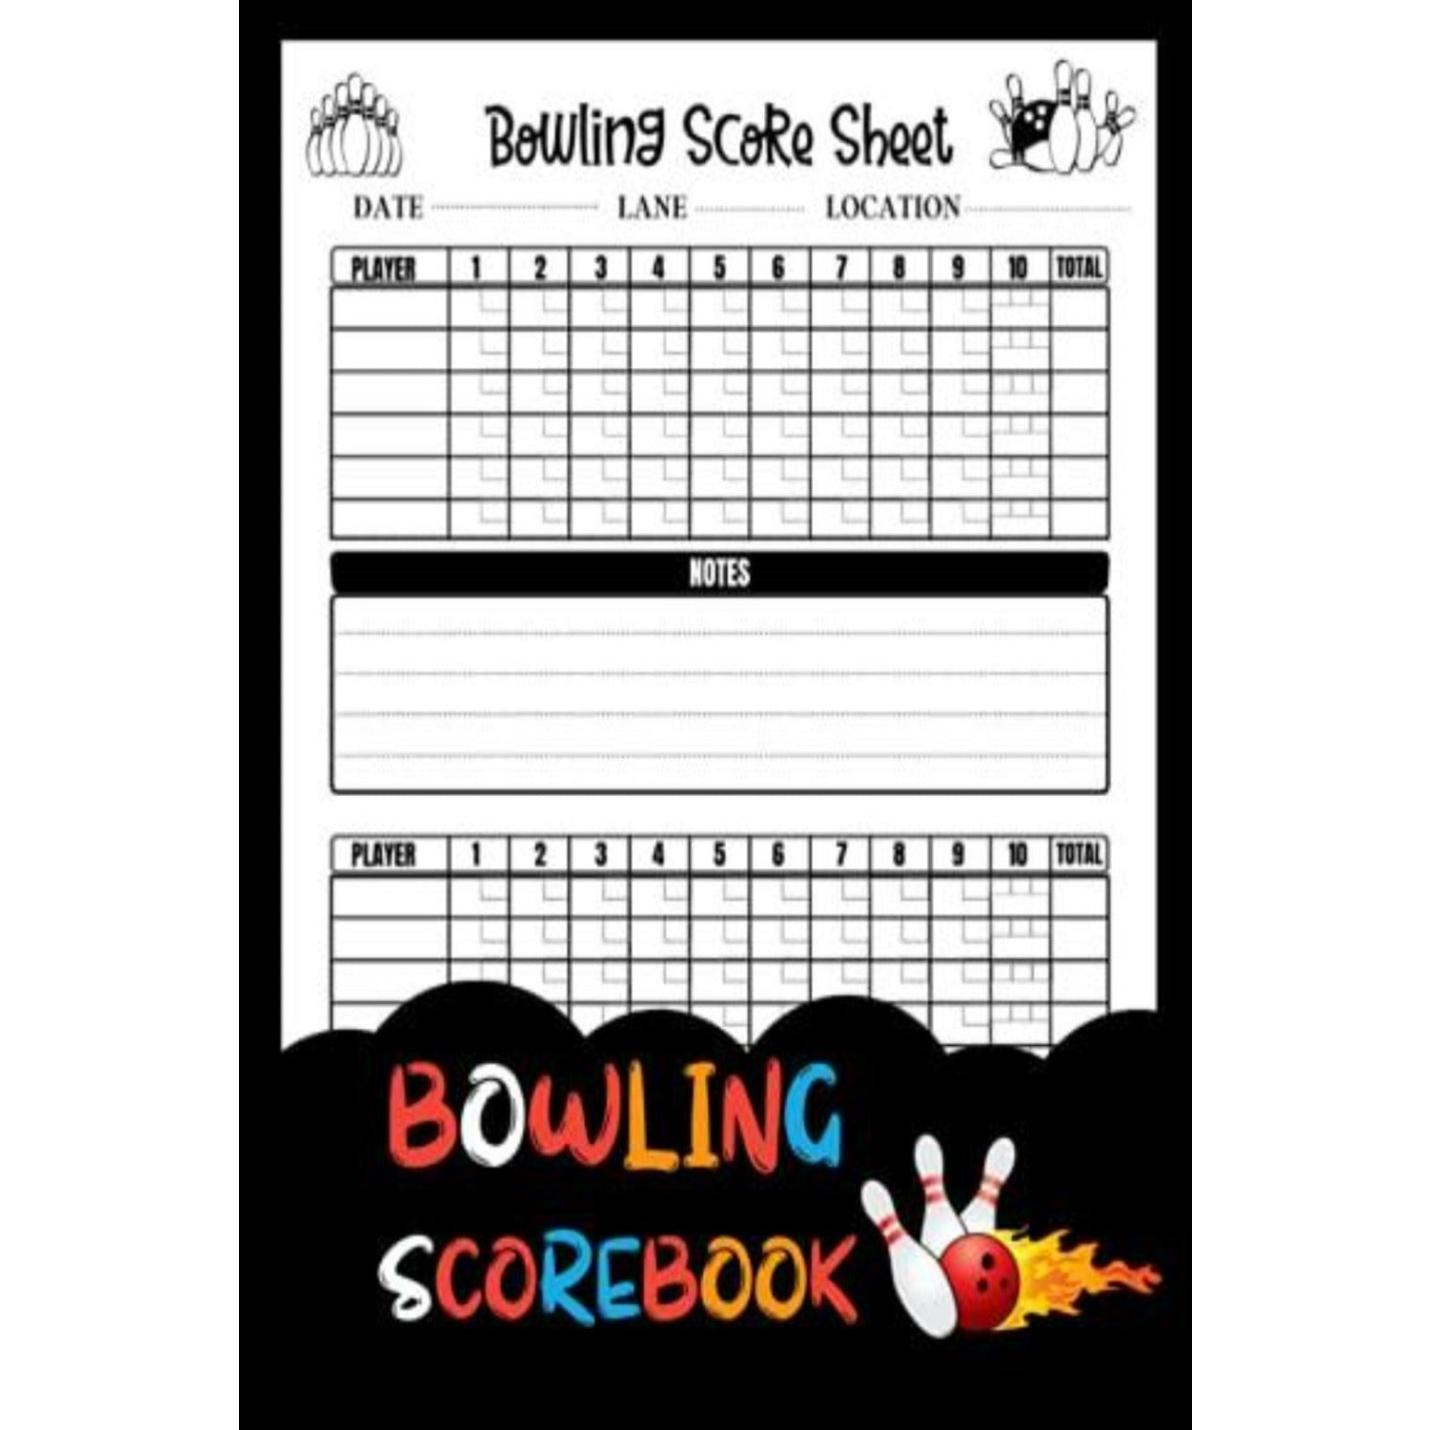 Bowling scoreboek - Scorebladen voor score bijhouden